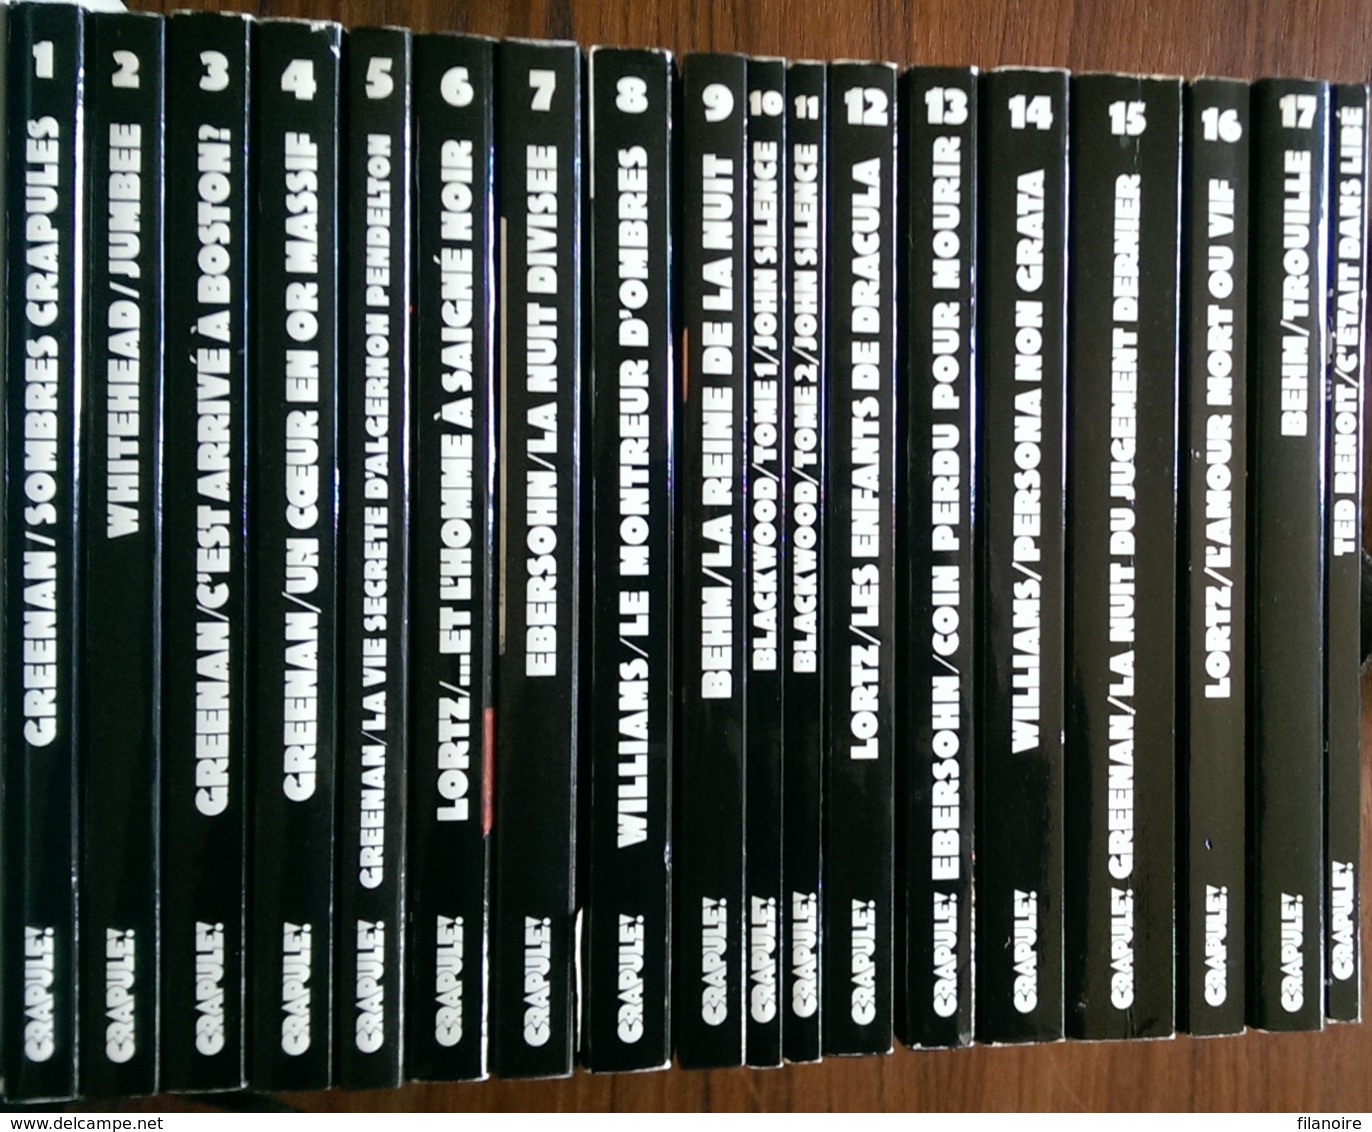 Sombre Crapule Collection complète 18 volumes (EO, 1988/1990) Comme neuf ! Edité à 3000 exemplaires !